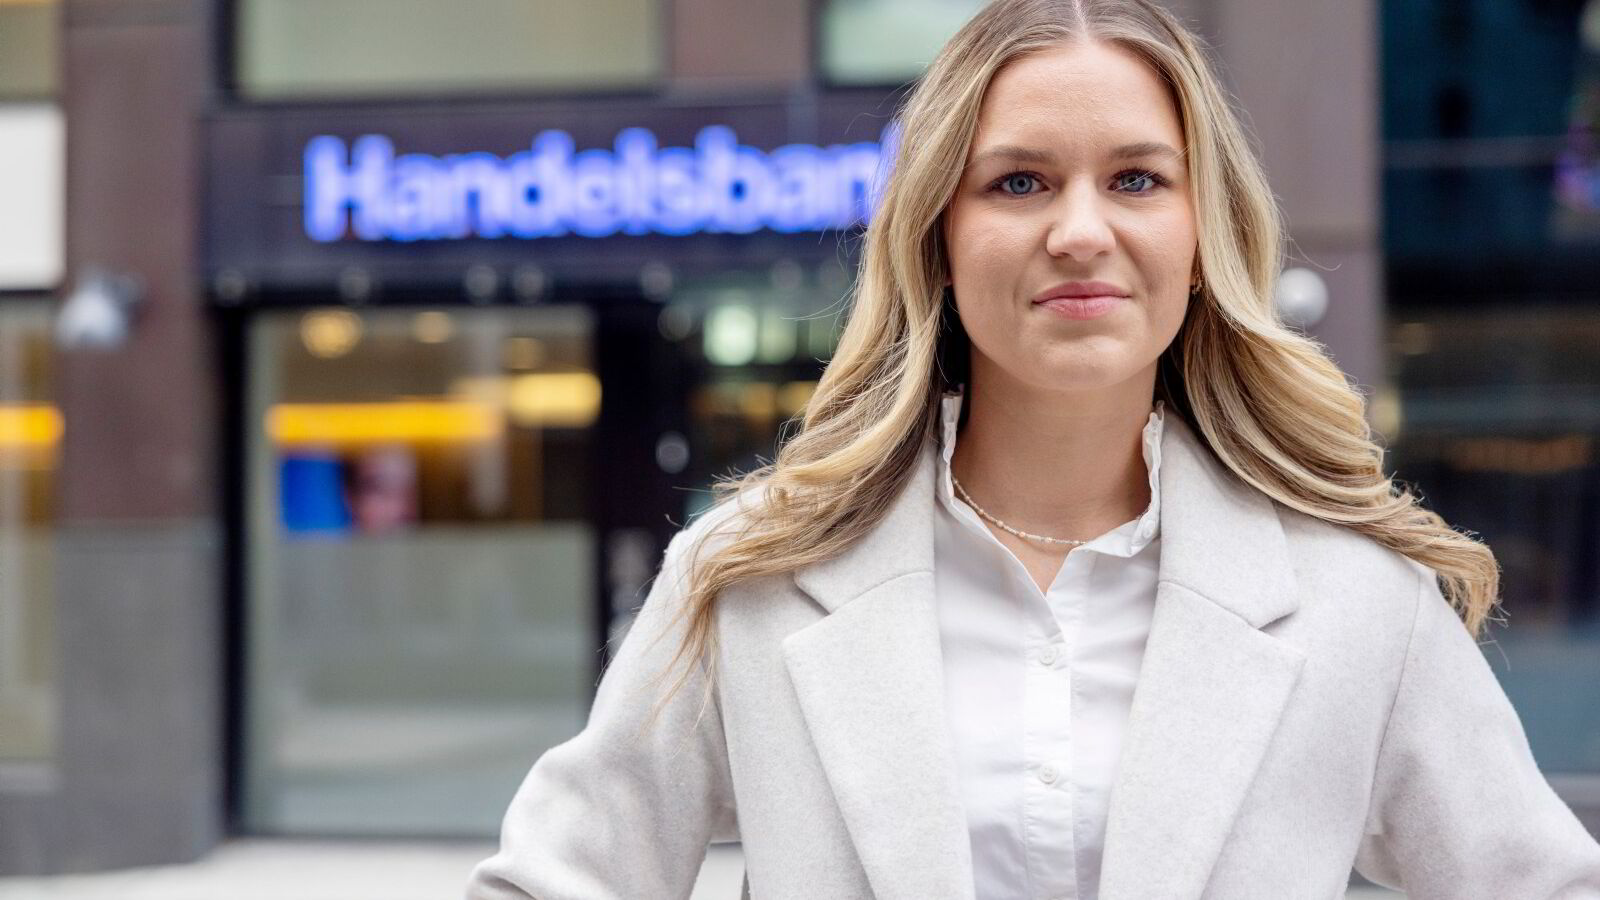 Handelsbanken-økonom Sara Midtgaard går til Nordea